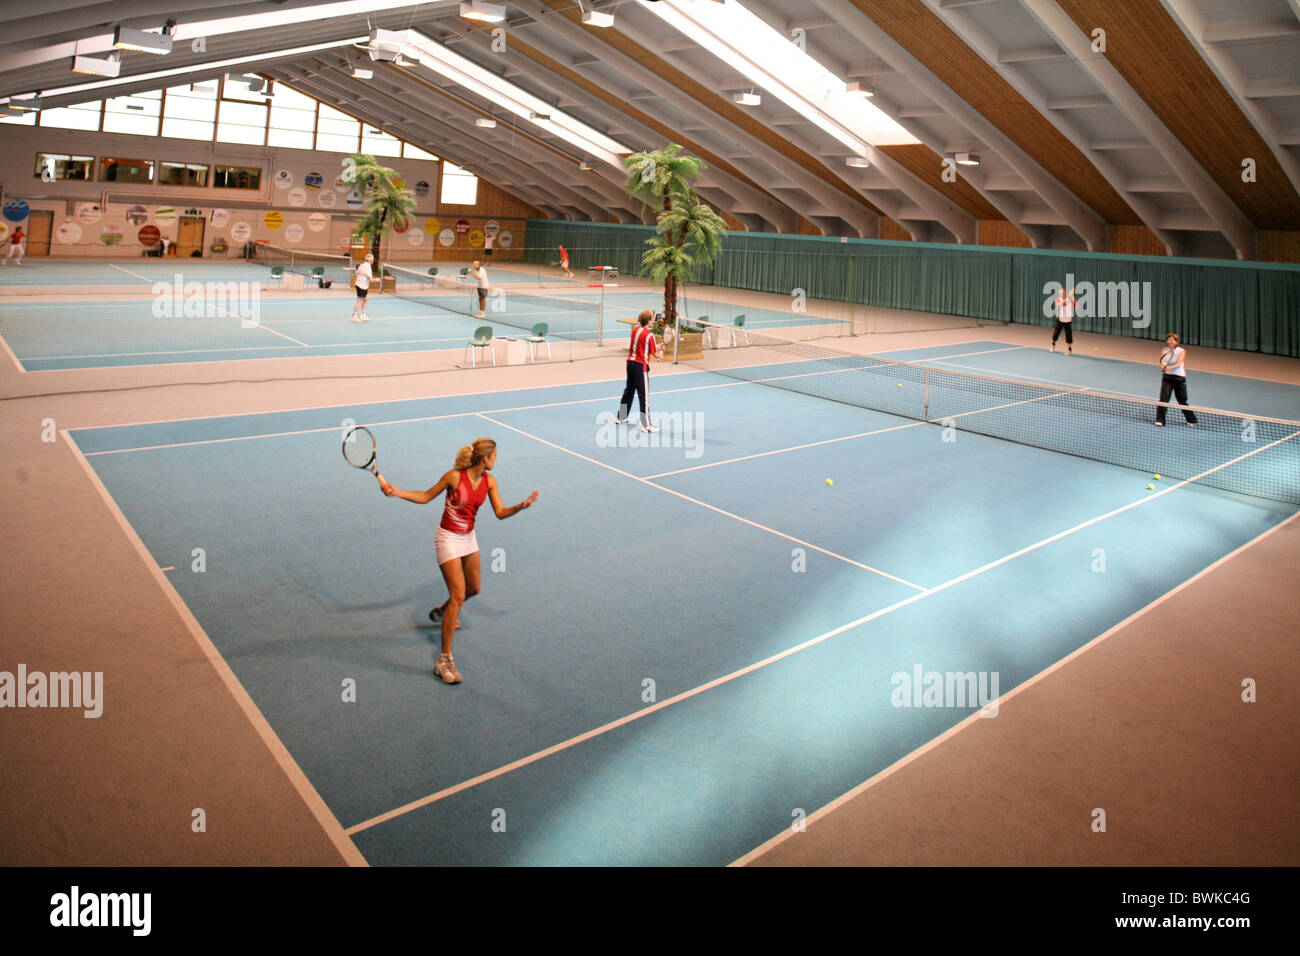 überdachten Hof in Kurs Lektion Training Tennishalle Halle Sport Freizeit Sport Person Tennis Felder pl Stockfoto